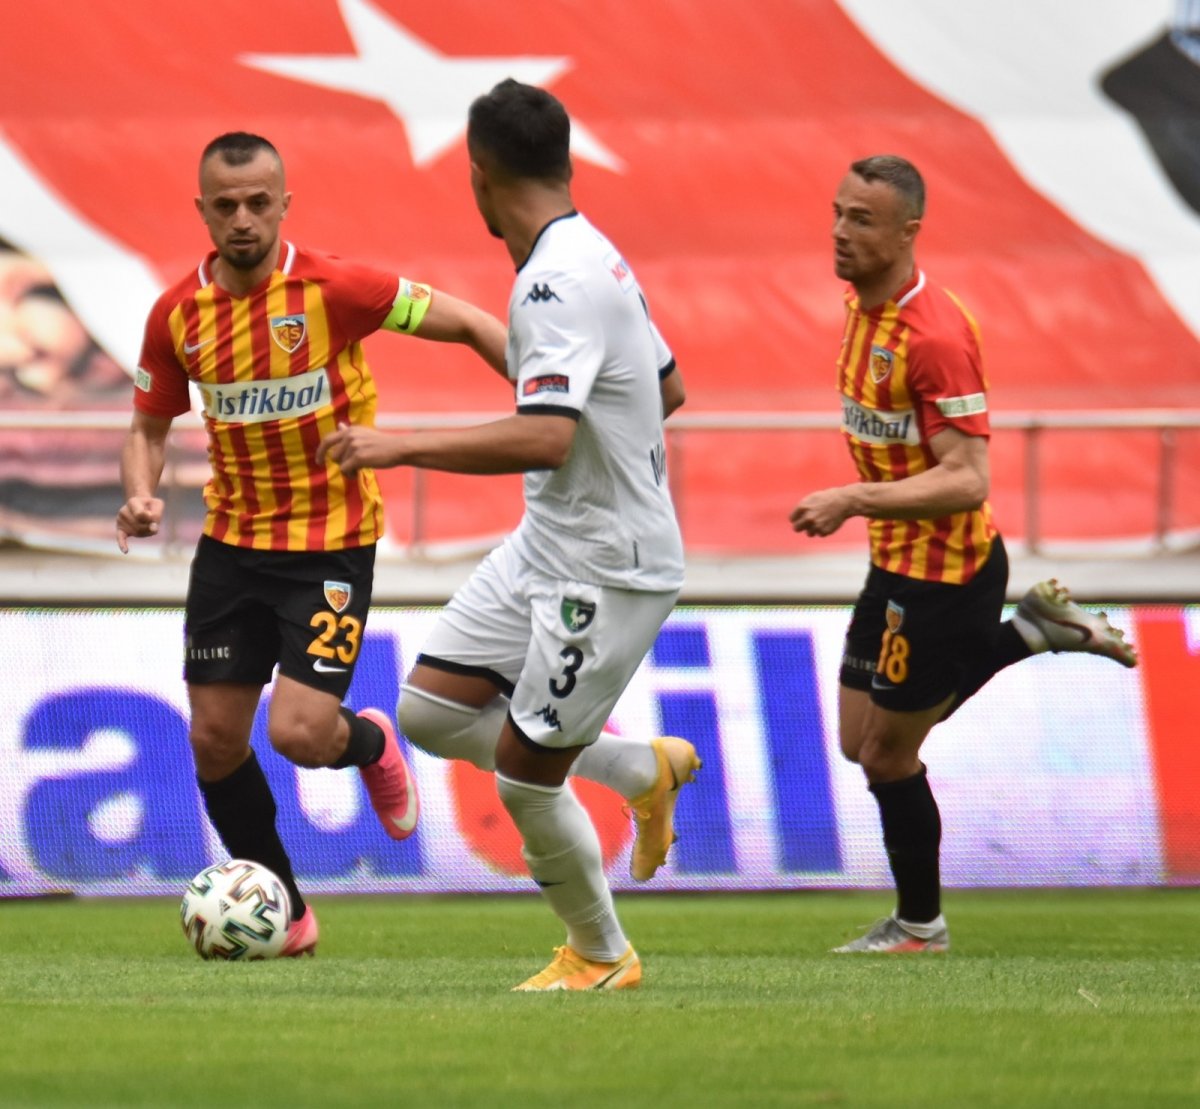 Kayserispor, Denizlispor'u 6-3 mağlup etti